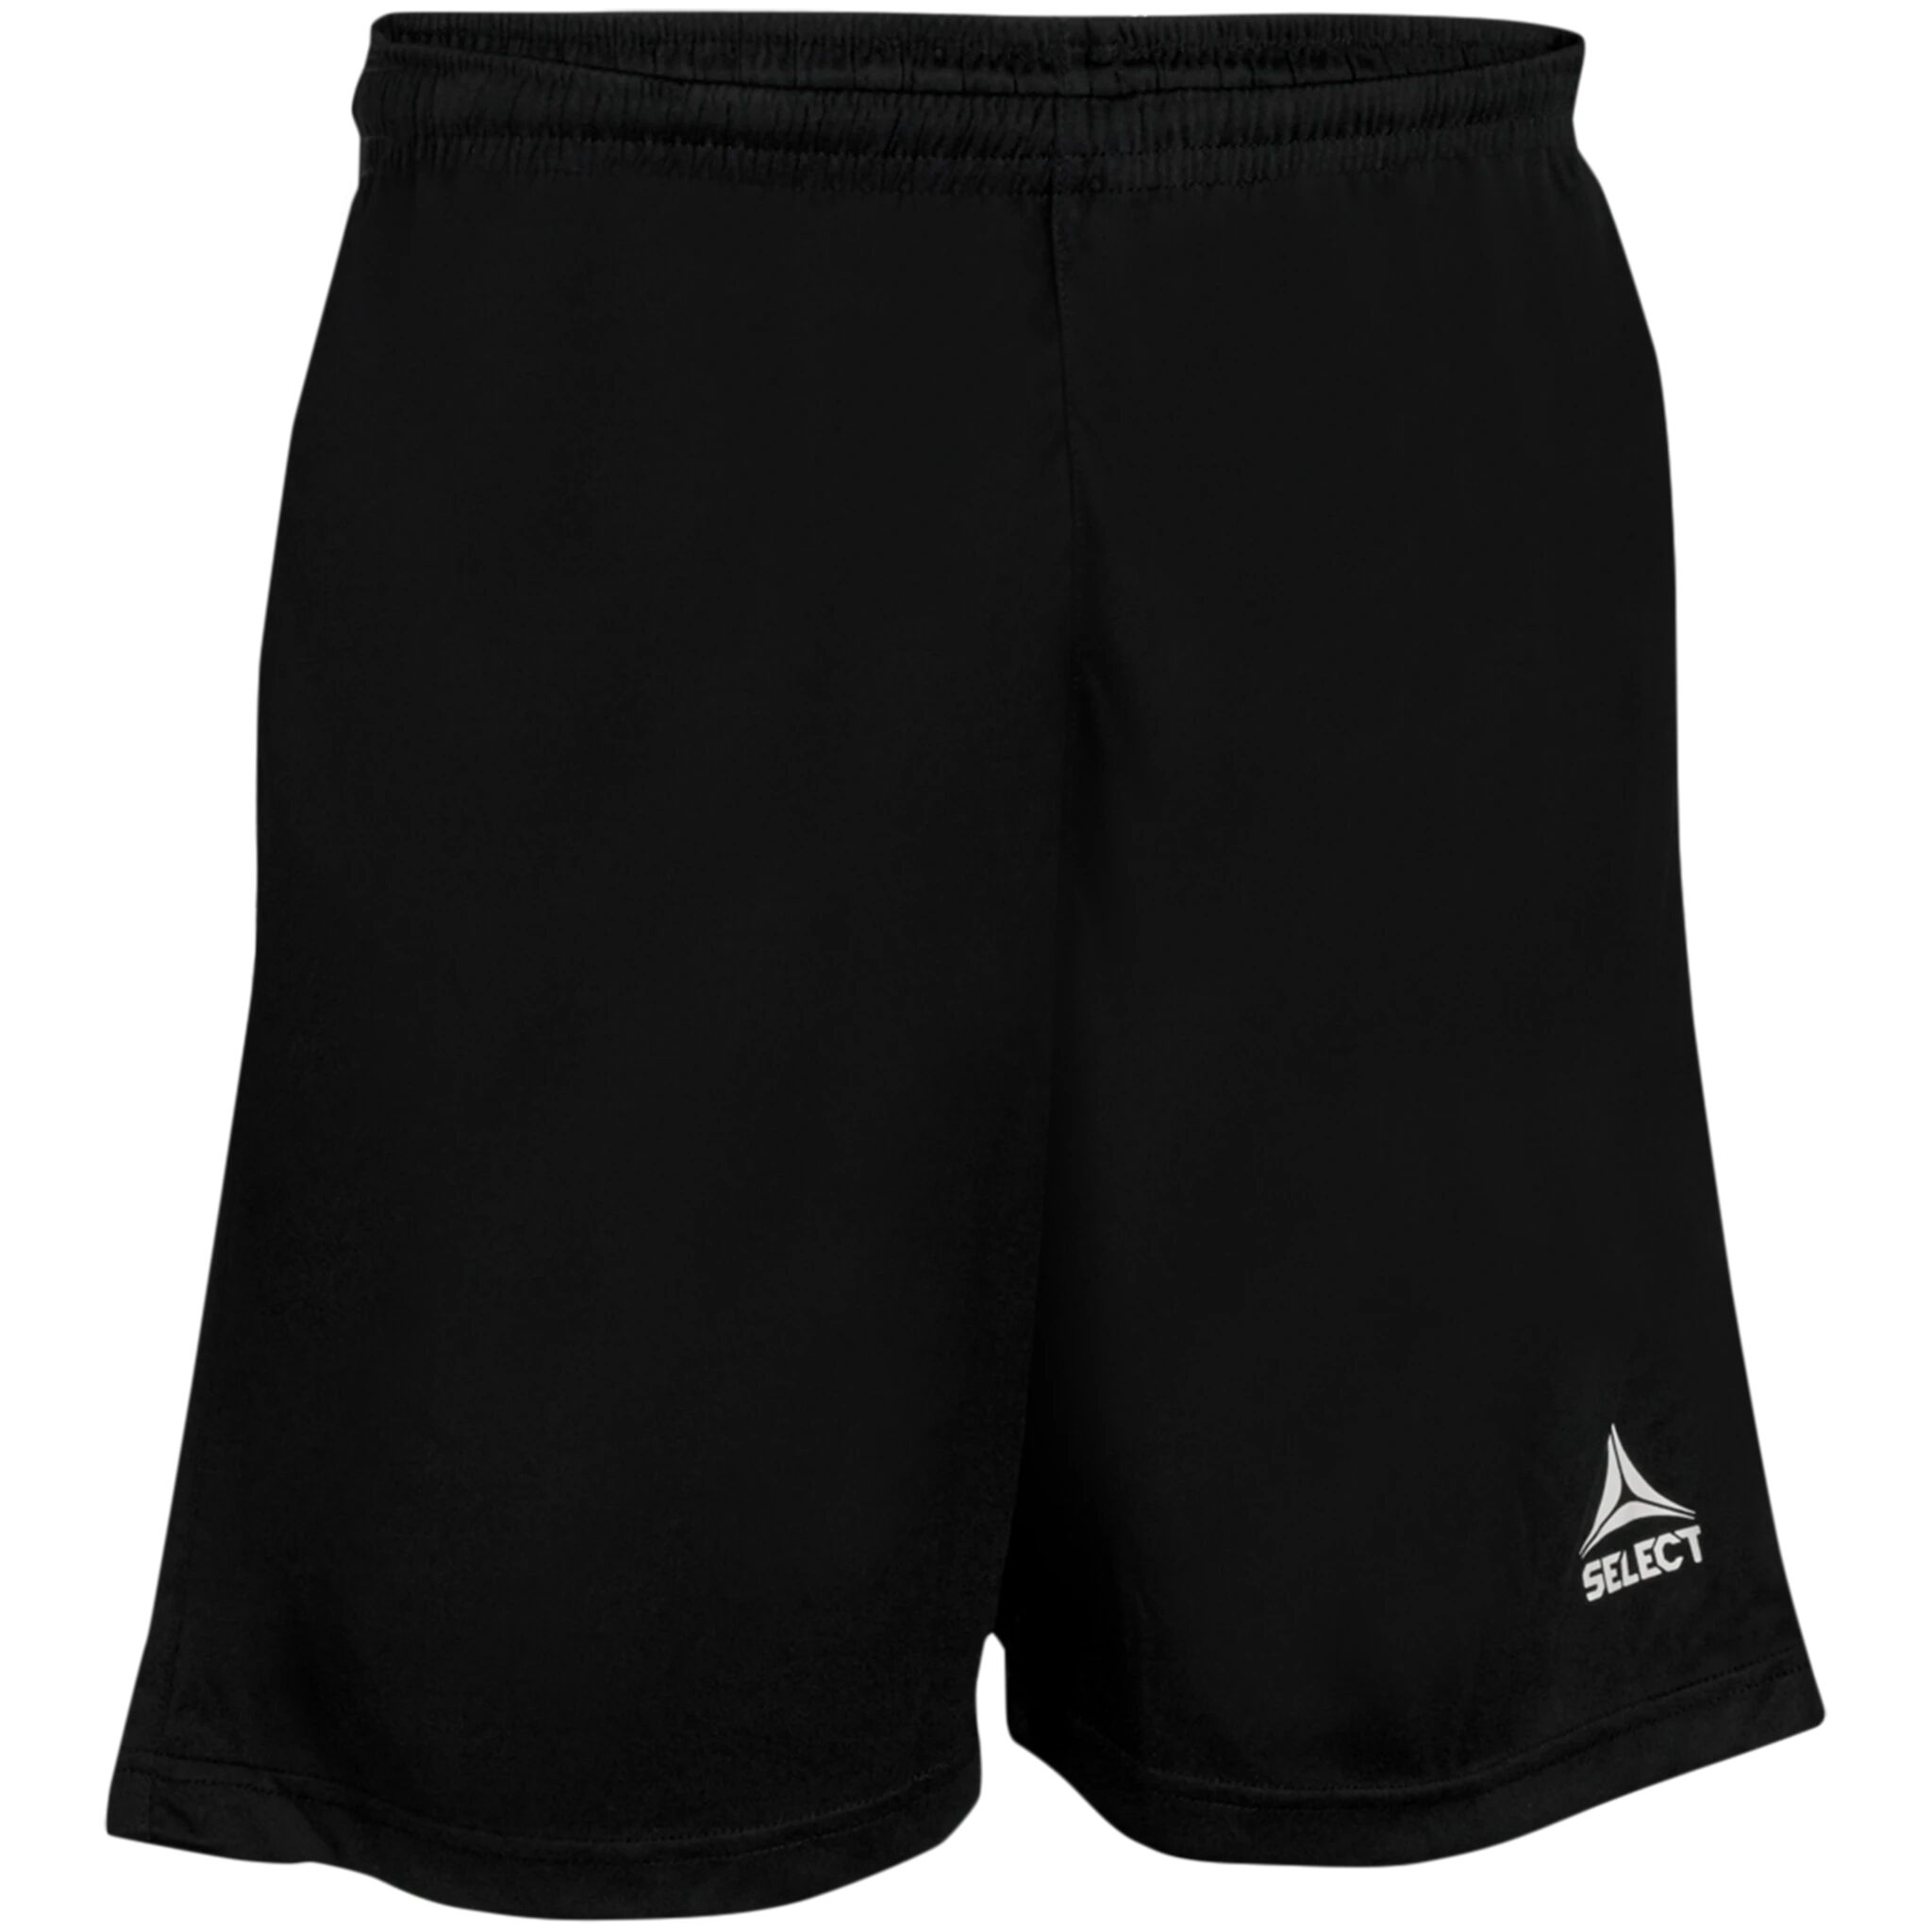 Select Referee shorts v21, dommershorts senior XL BLACK